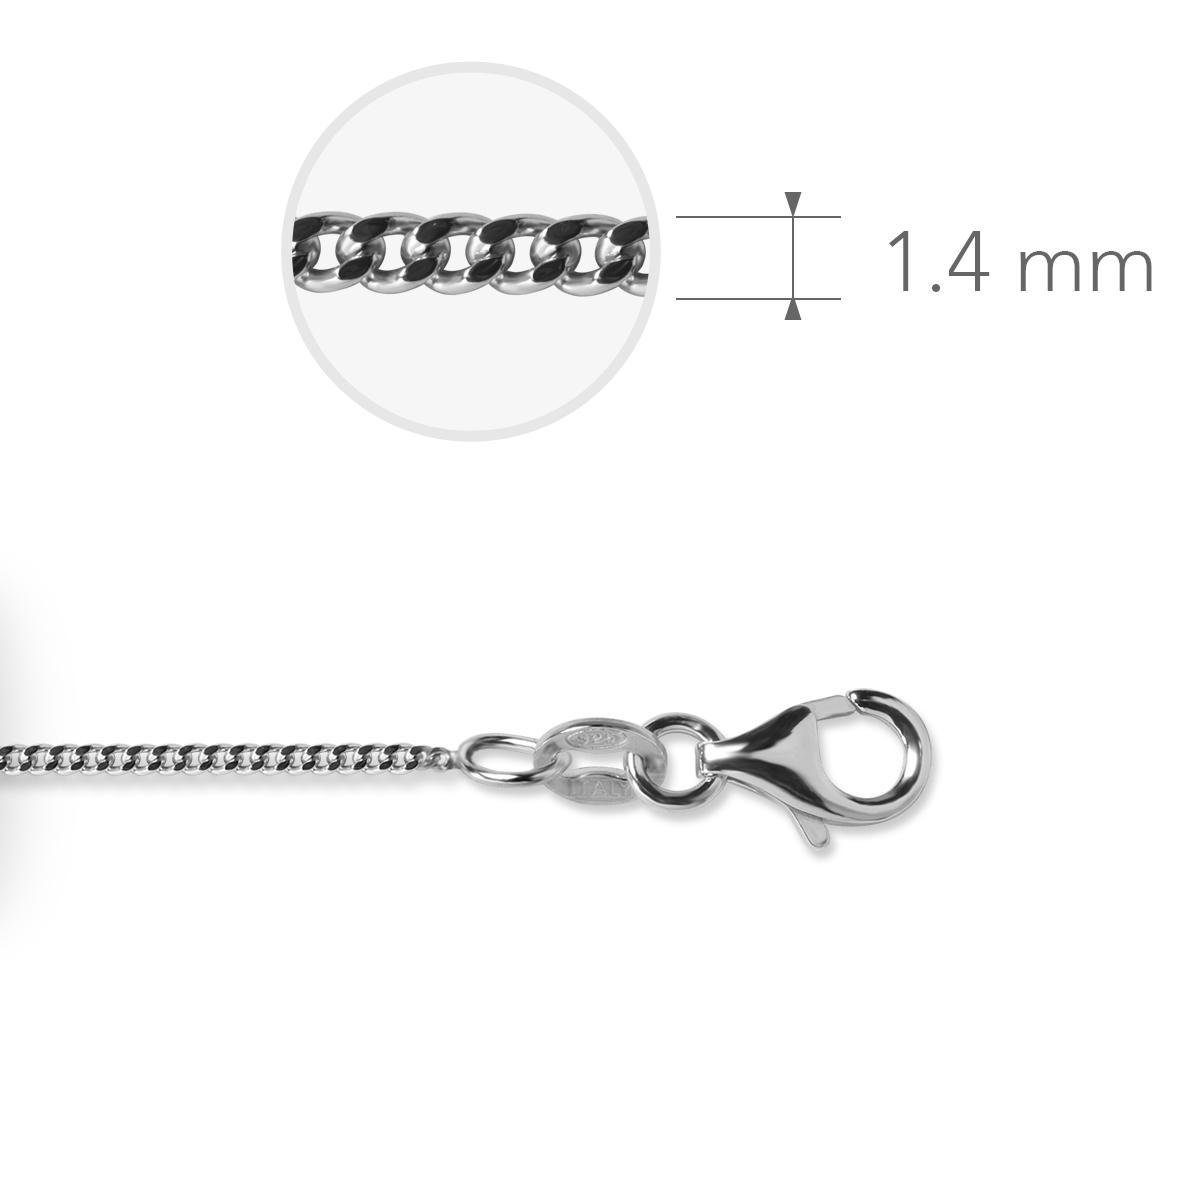 Jewels Inc. - Gourmet Ketting met Karabijnsluiting - 1.4mm Breed - Lengte 42cm - Gerhodineerd Zilver 925